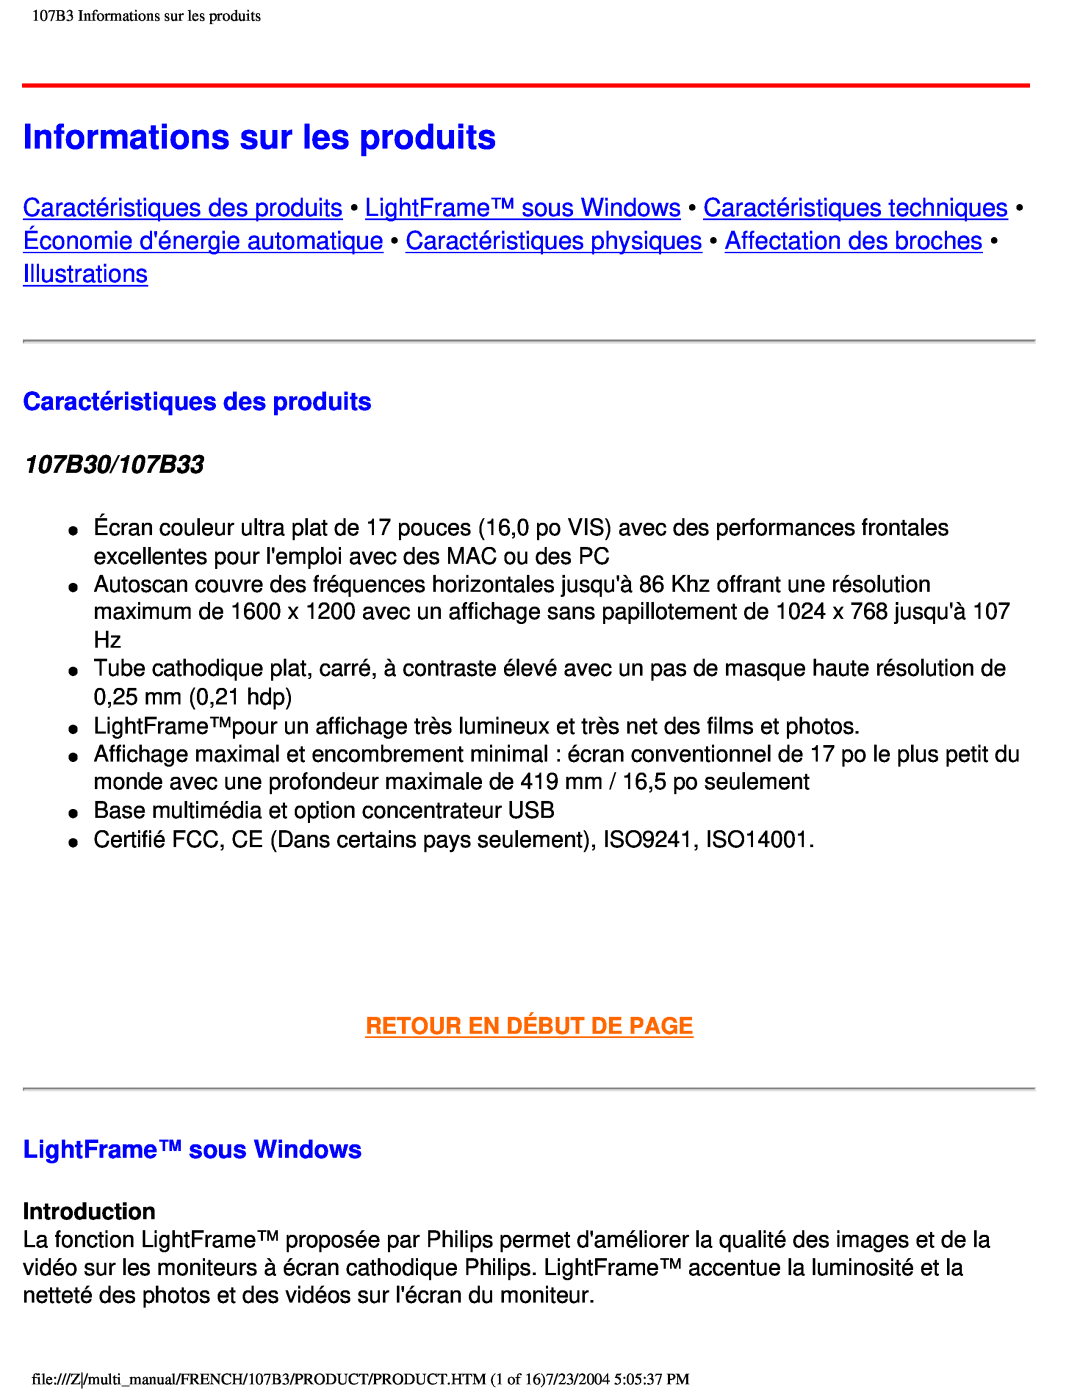 Philips user manual Informations sur les produits, Caractéristiques des produits, 107B30/107B33, LightFrame sous Windows 